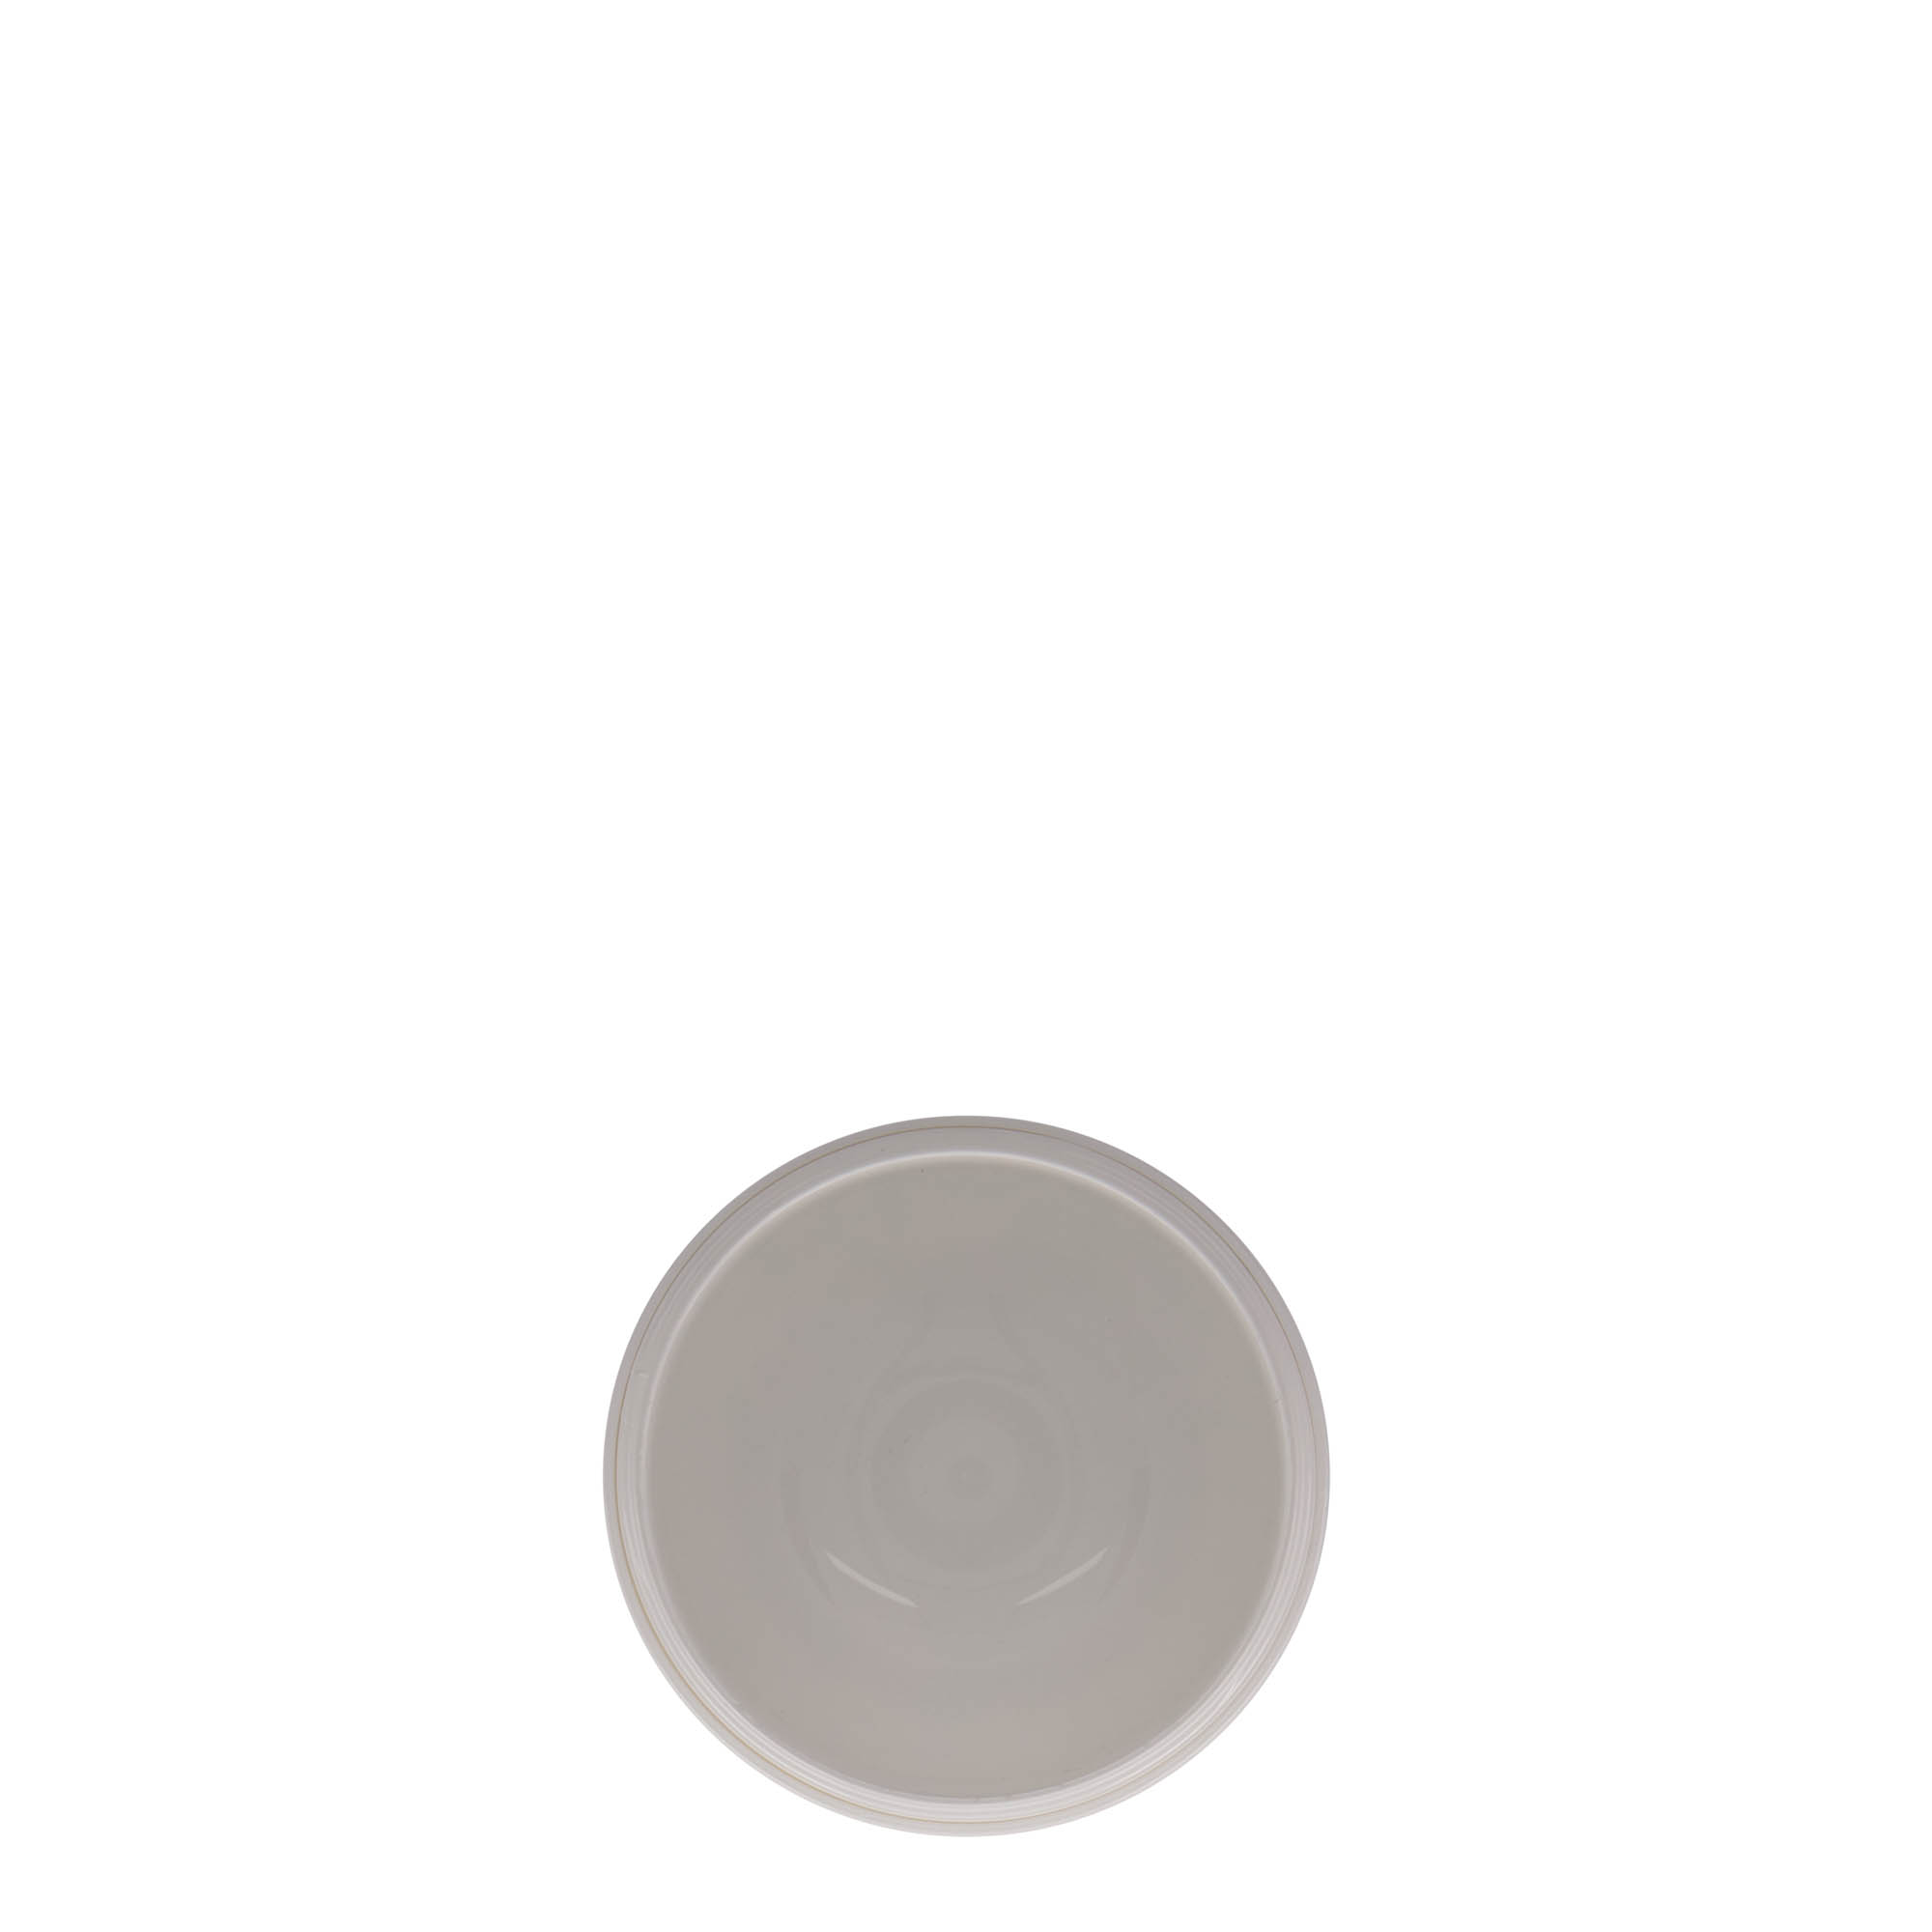 150 ml plastic jar 'Bianca', PP, white, closure: screw cap